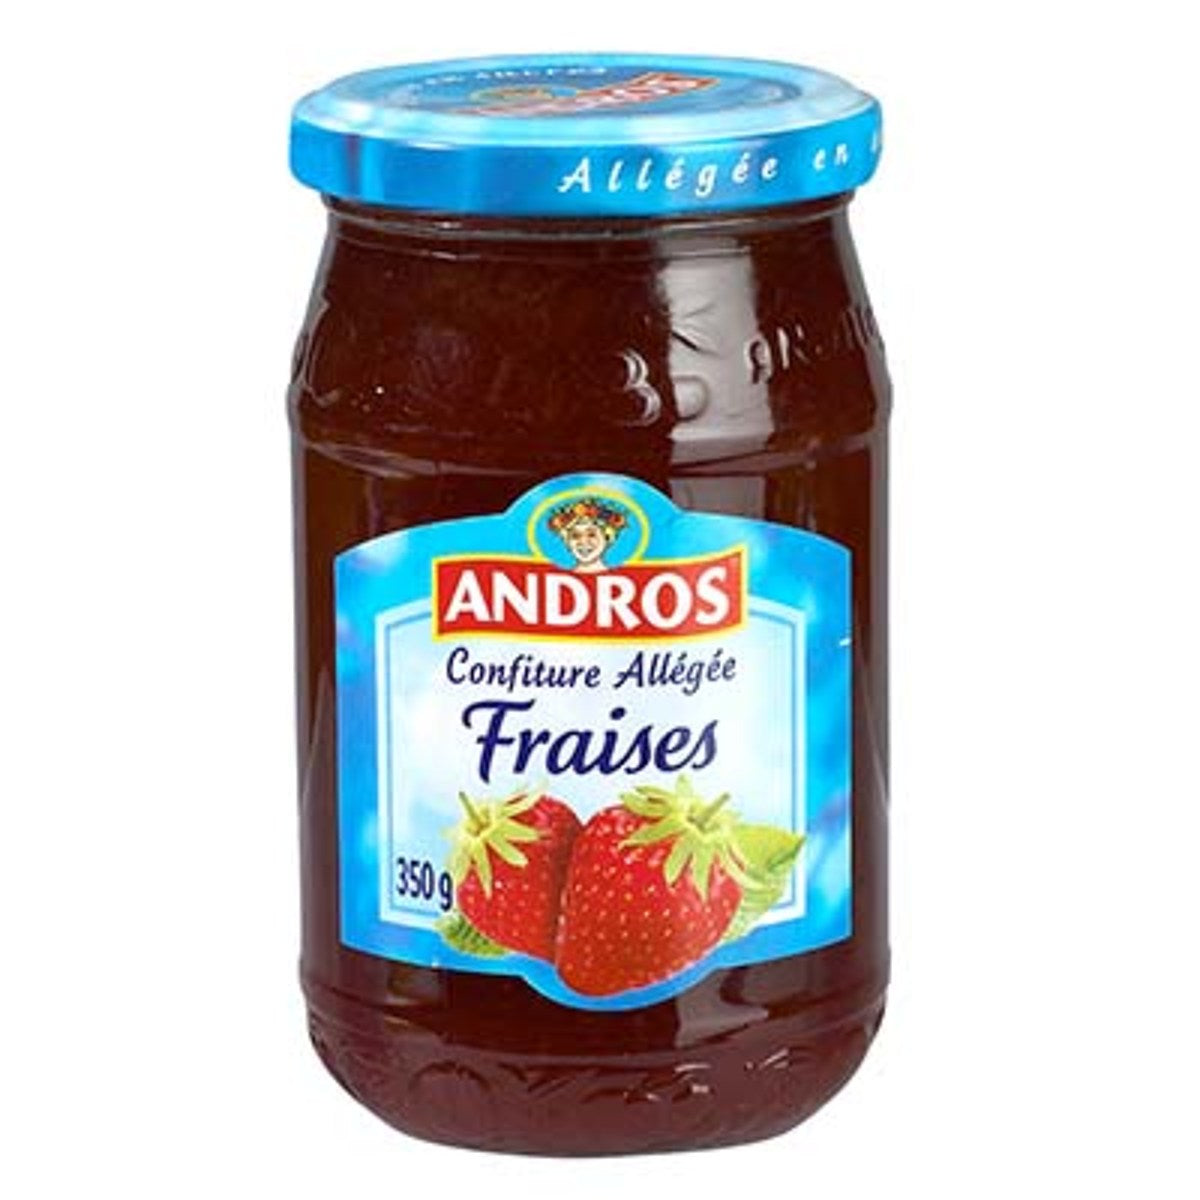 Confiture allégée fraises ANDROS 350g – épicerie les 3 gourmets